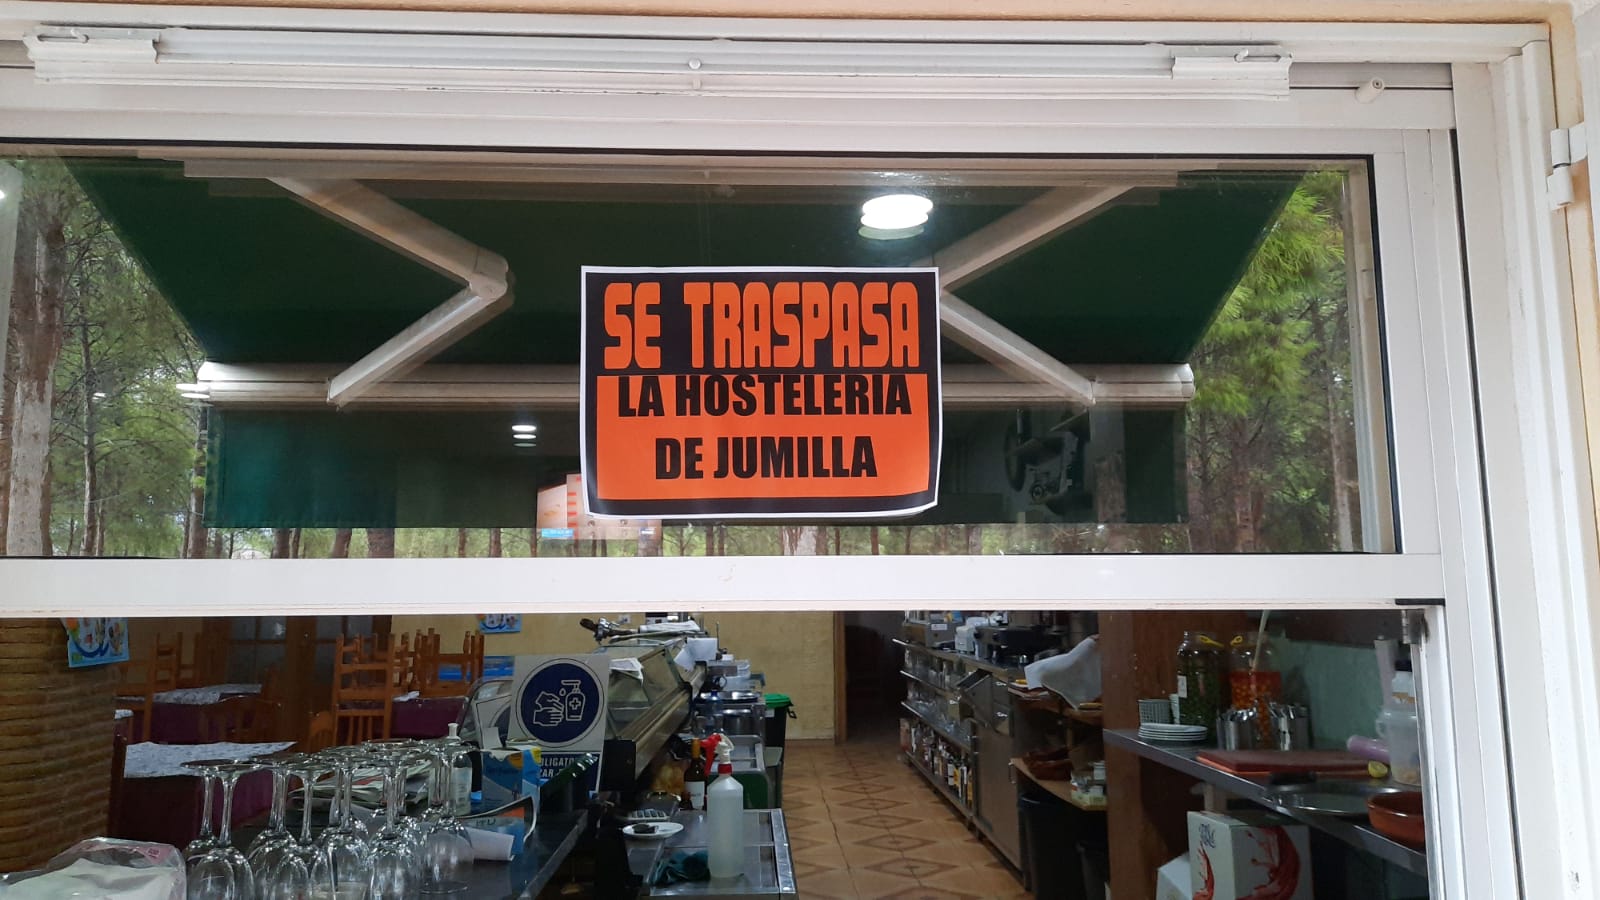 Óscar Martínez sobre la campaña «Se traspasa la hostelería de Jumilla»: “El objetivo era gritar en silencio que necesitamos ayuda”